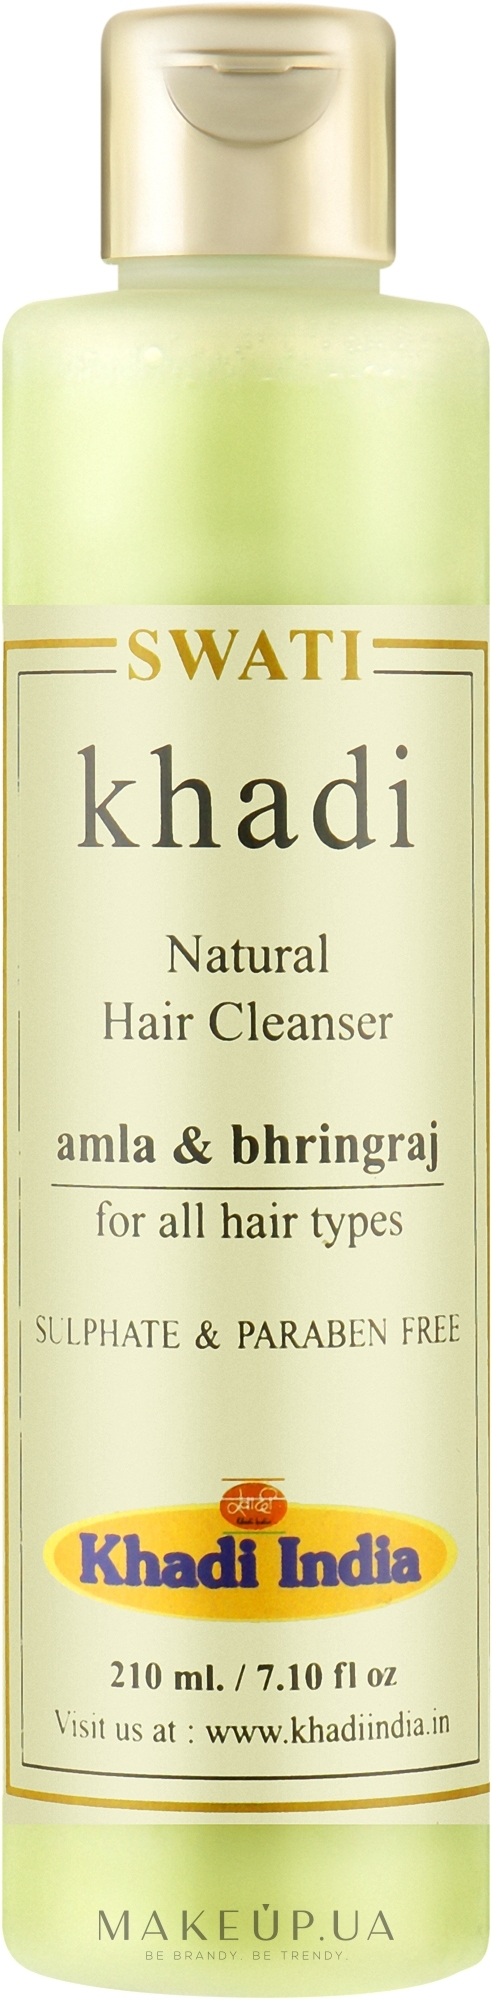 Трав'яний шампунь для волосся "Амла та Бринградж" - Khadi Swati Natural Hair Cleanser Amla & Bhringraj — фото 210ml